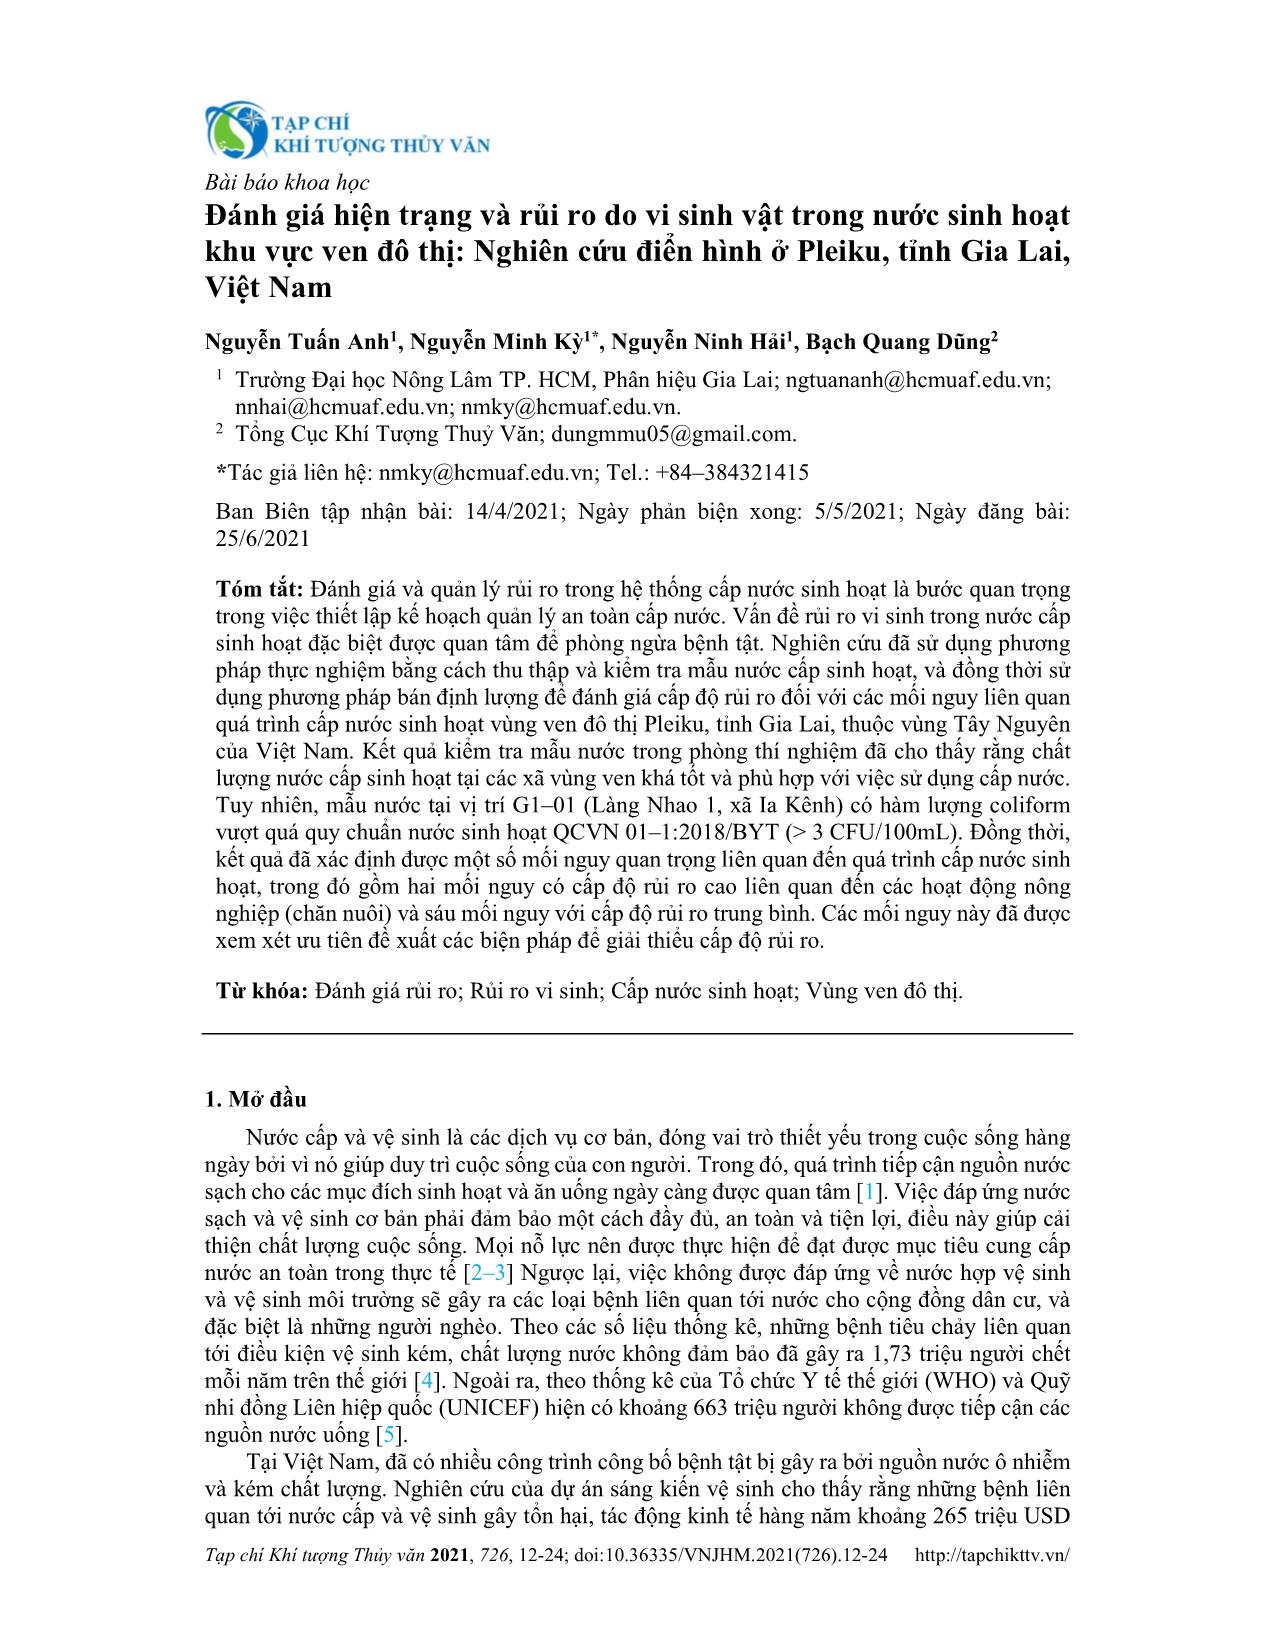 Đánh giá hiện trạng và rủi ro do vi sinh vật trong nước sinh hoạt khu vực ven đô thị: Nghiên cứu điển hình ở Pleiku, tỉnh Gia Lai, Việt Nam trang 1